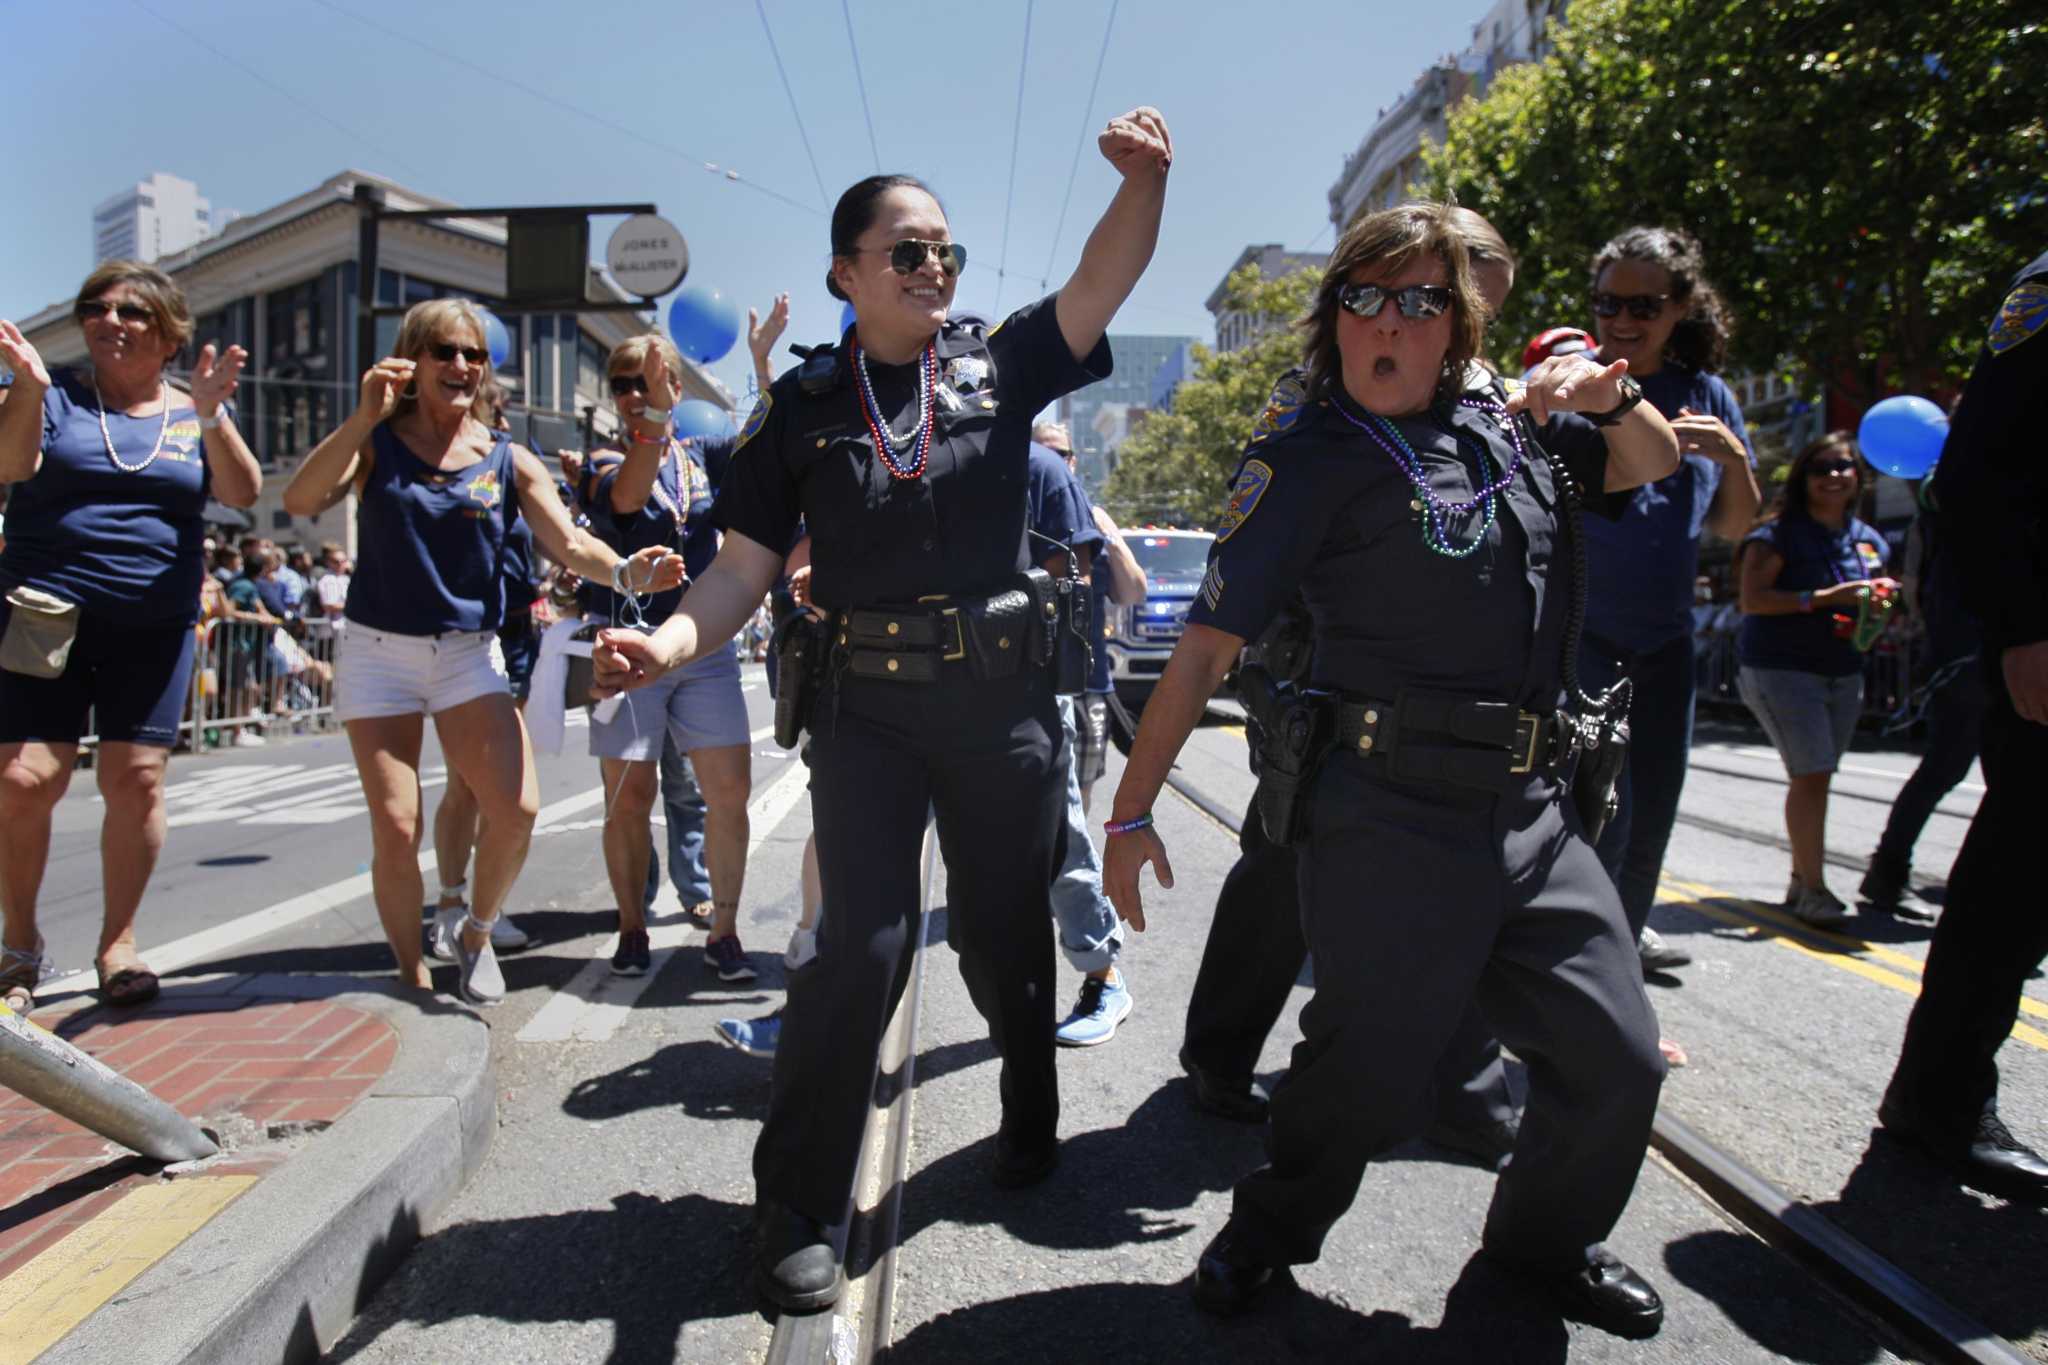 SF-LA set to make history by wearing pride uniforms